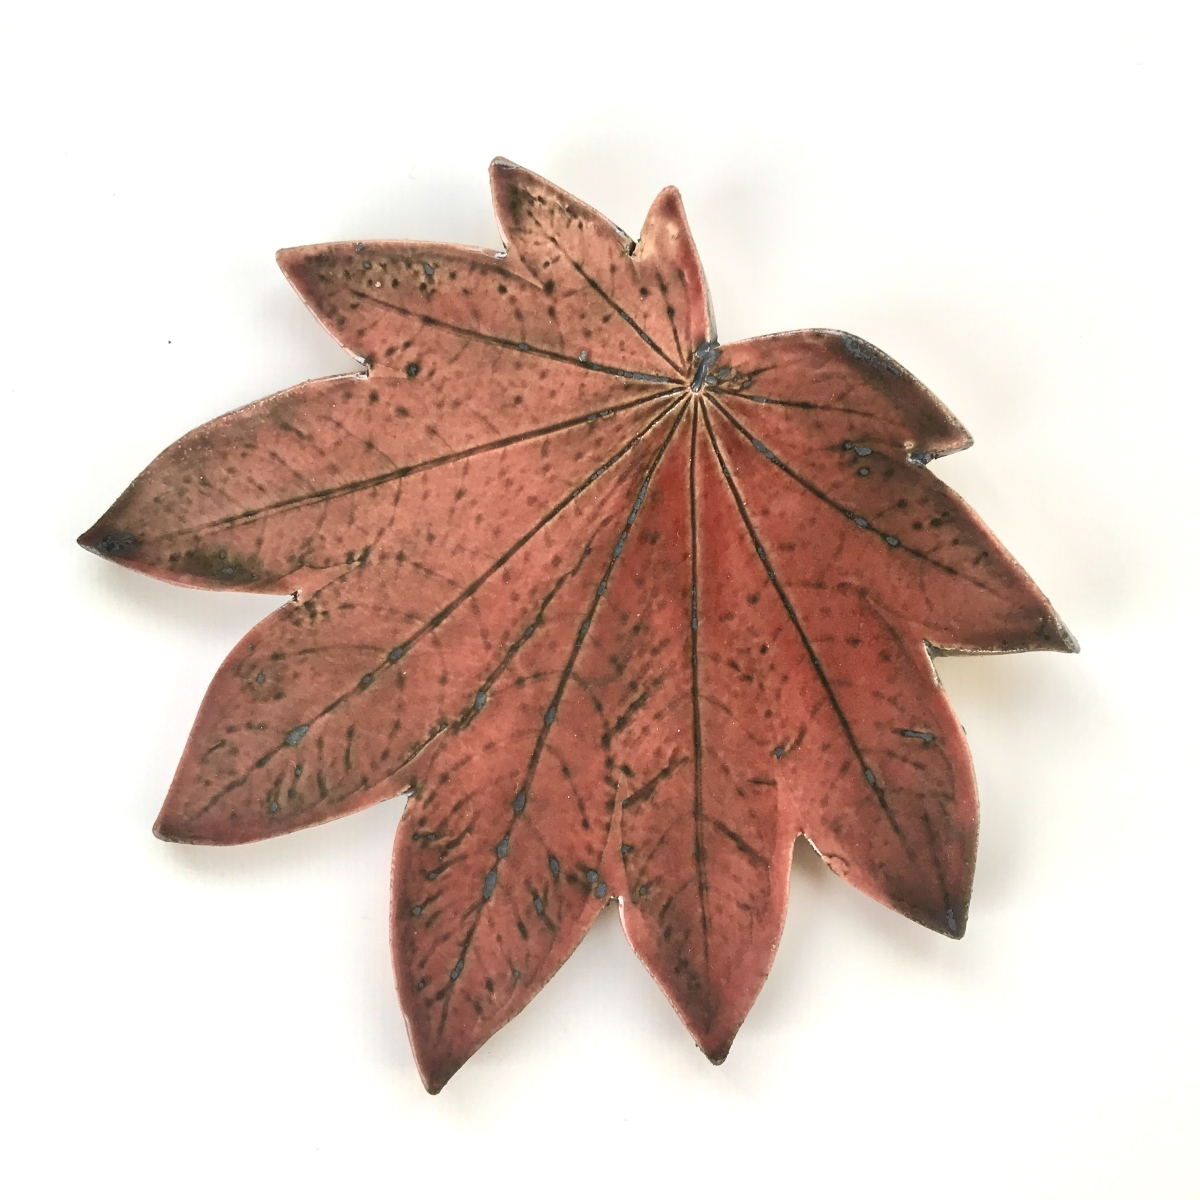 Fallen Leaf Ceramic Wall Art by Sonya Ceramic Art - Red Autumn Maple Leaf Design.jpg